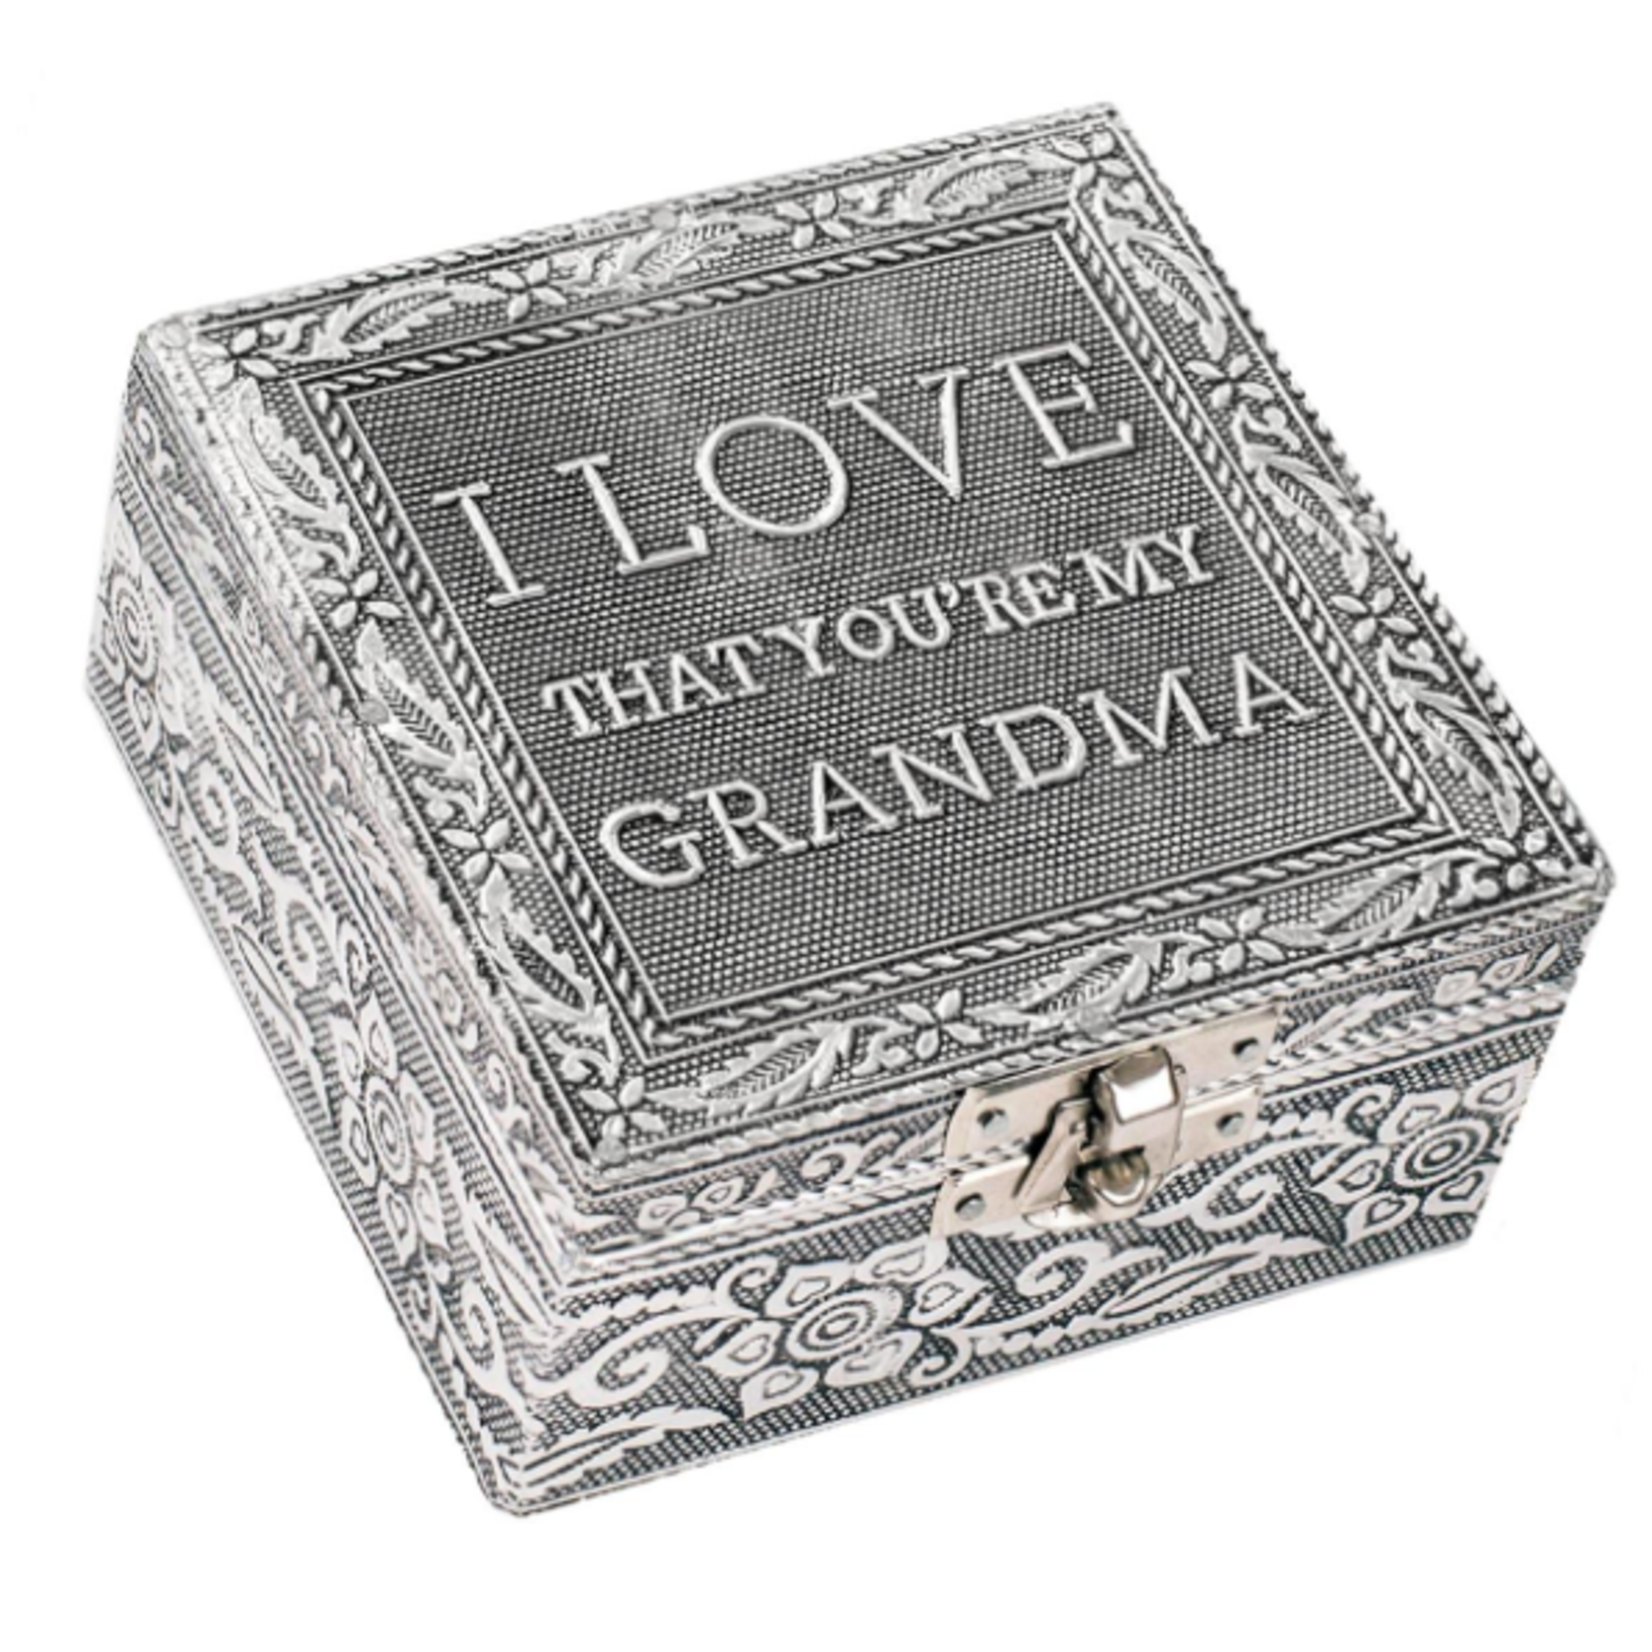 I Love Grandma Keepsake Box